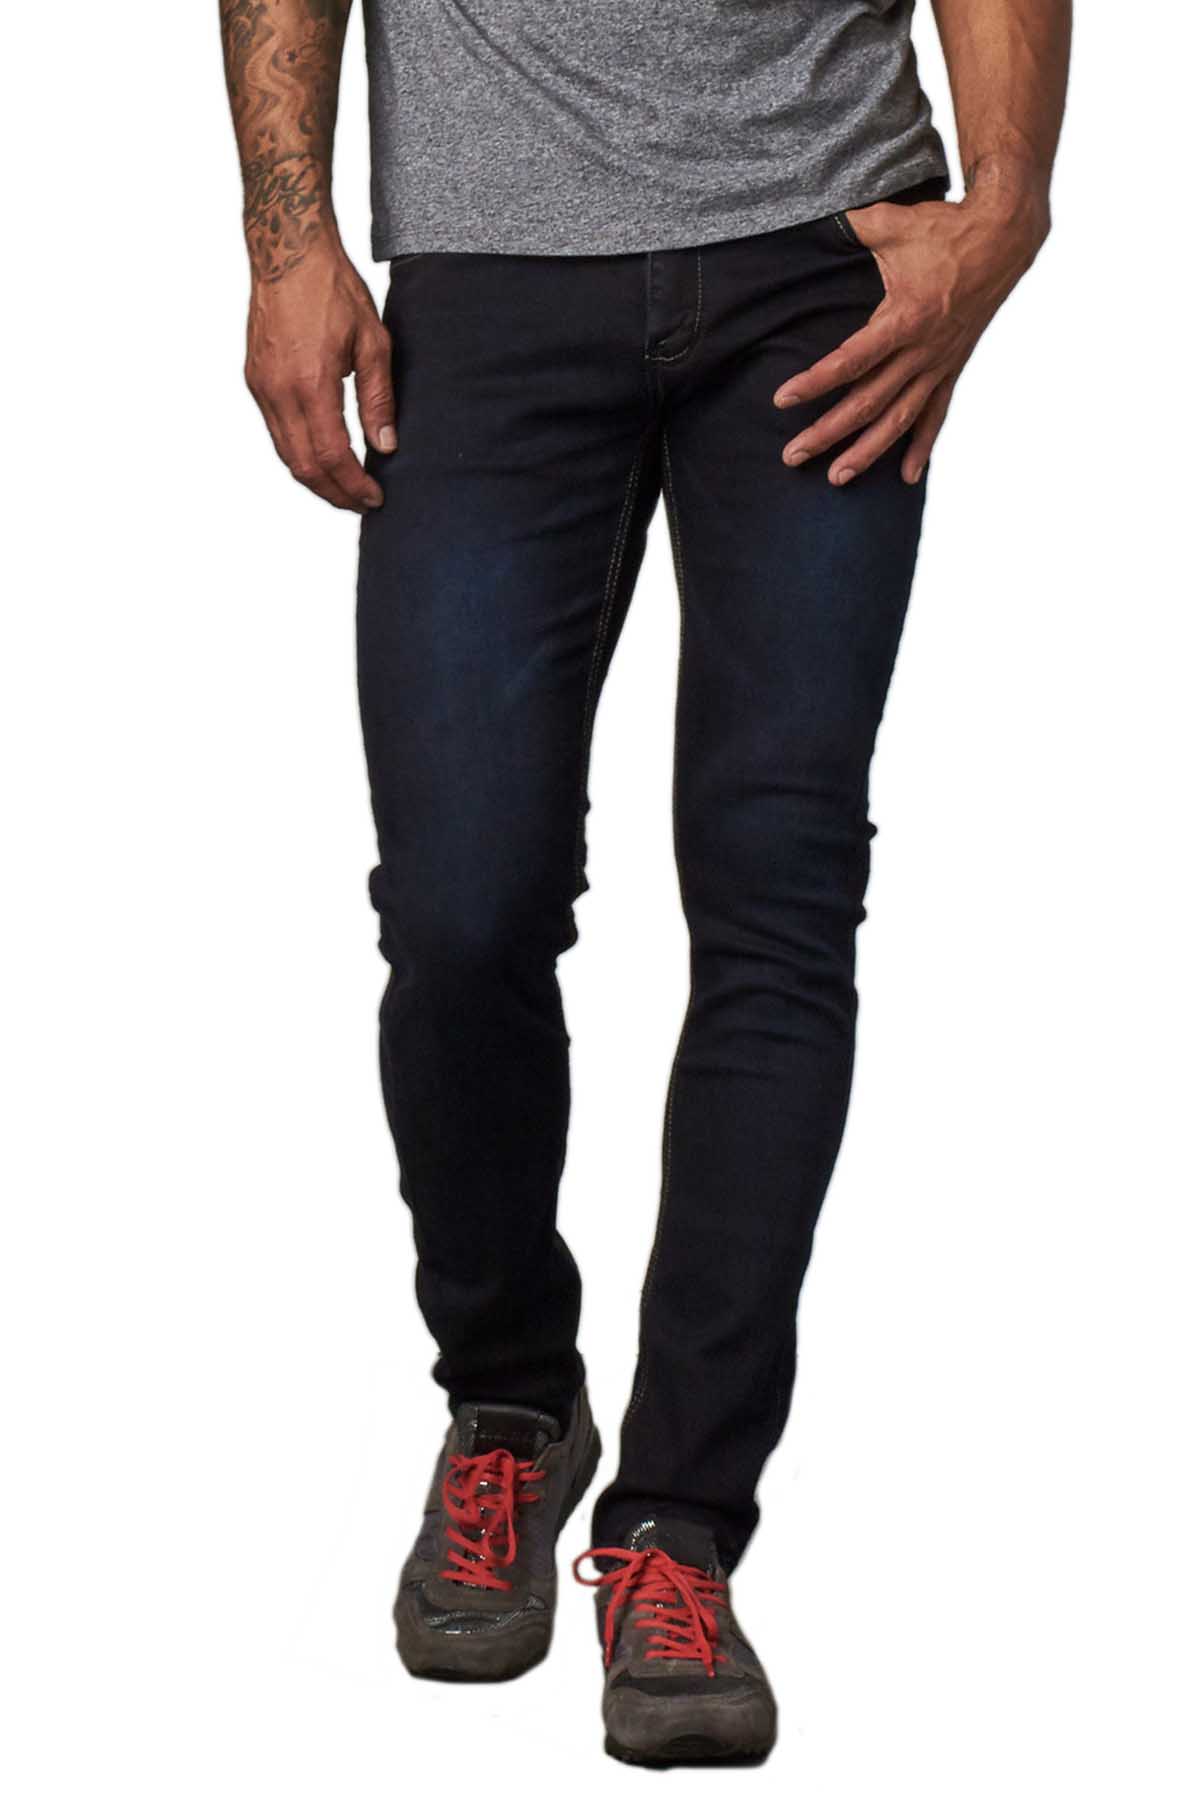 Recess Jeans & Design Slim Tapered Dark Wash Denim Pants